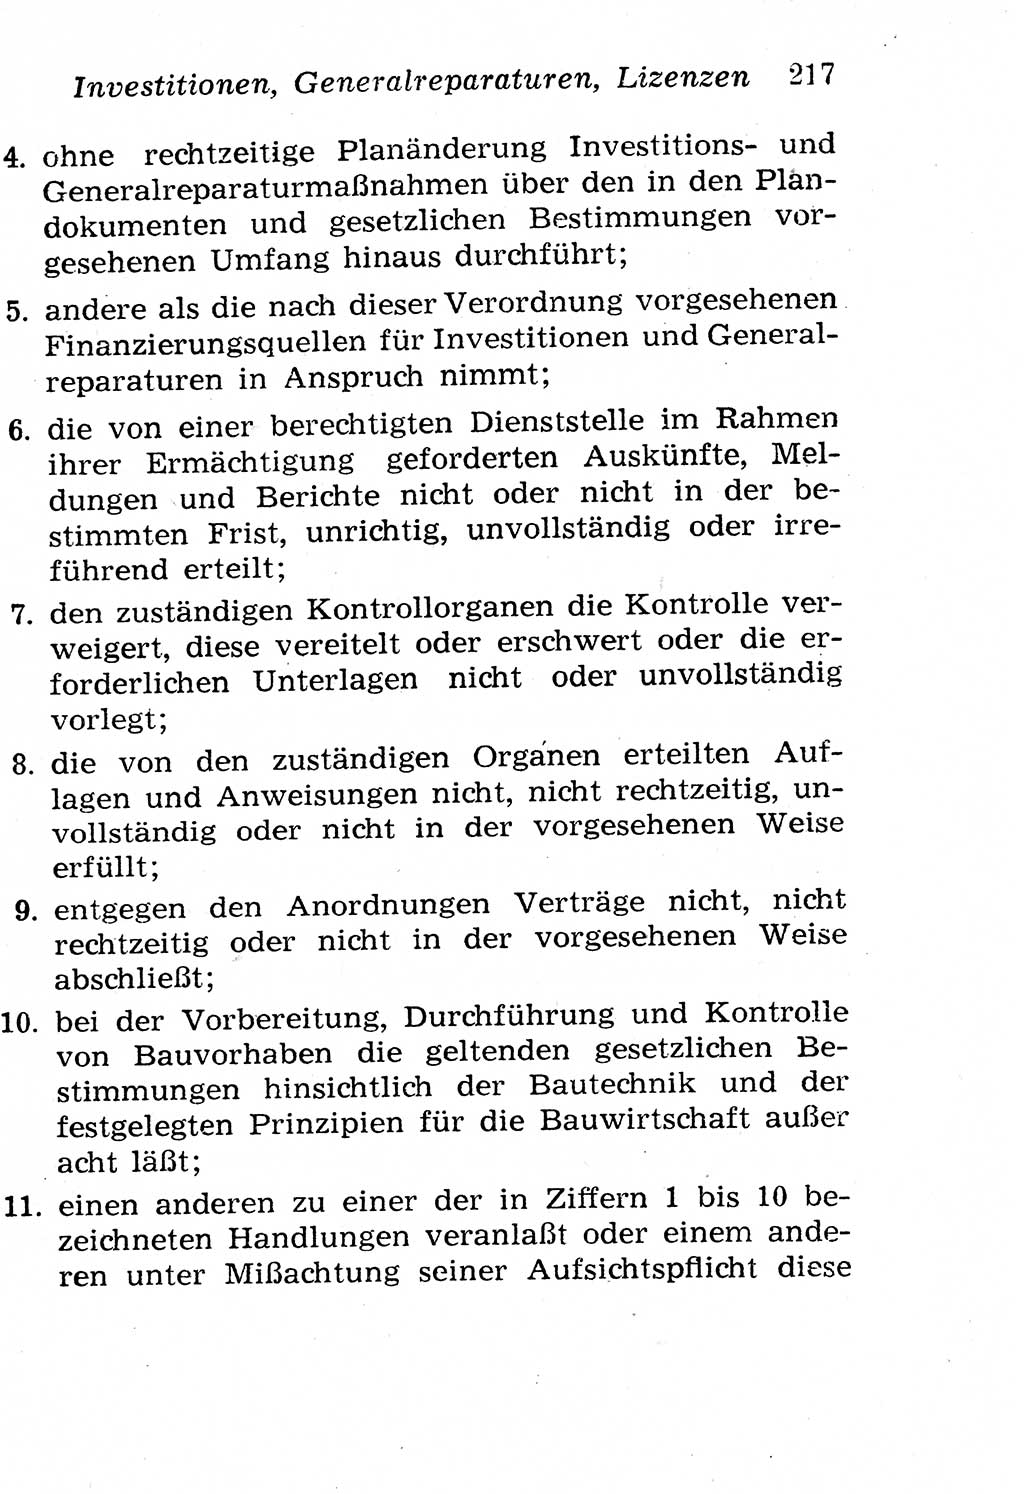 Strafgesetzbuch (StGB) und andere Strafgesetze [Deutsche Demokratische Republik (DDR)] 1958, Seite 217 (StGB Strafges. DDR 1958, S. 217)